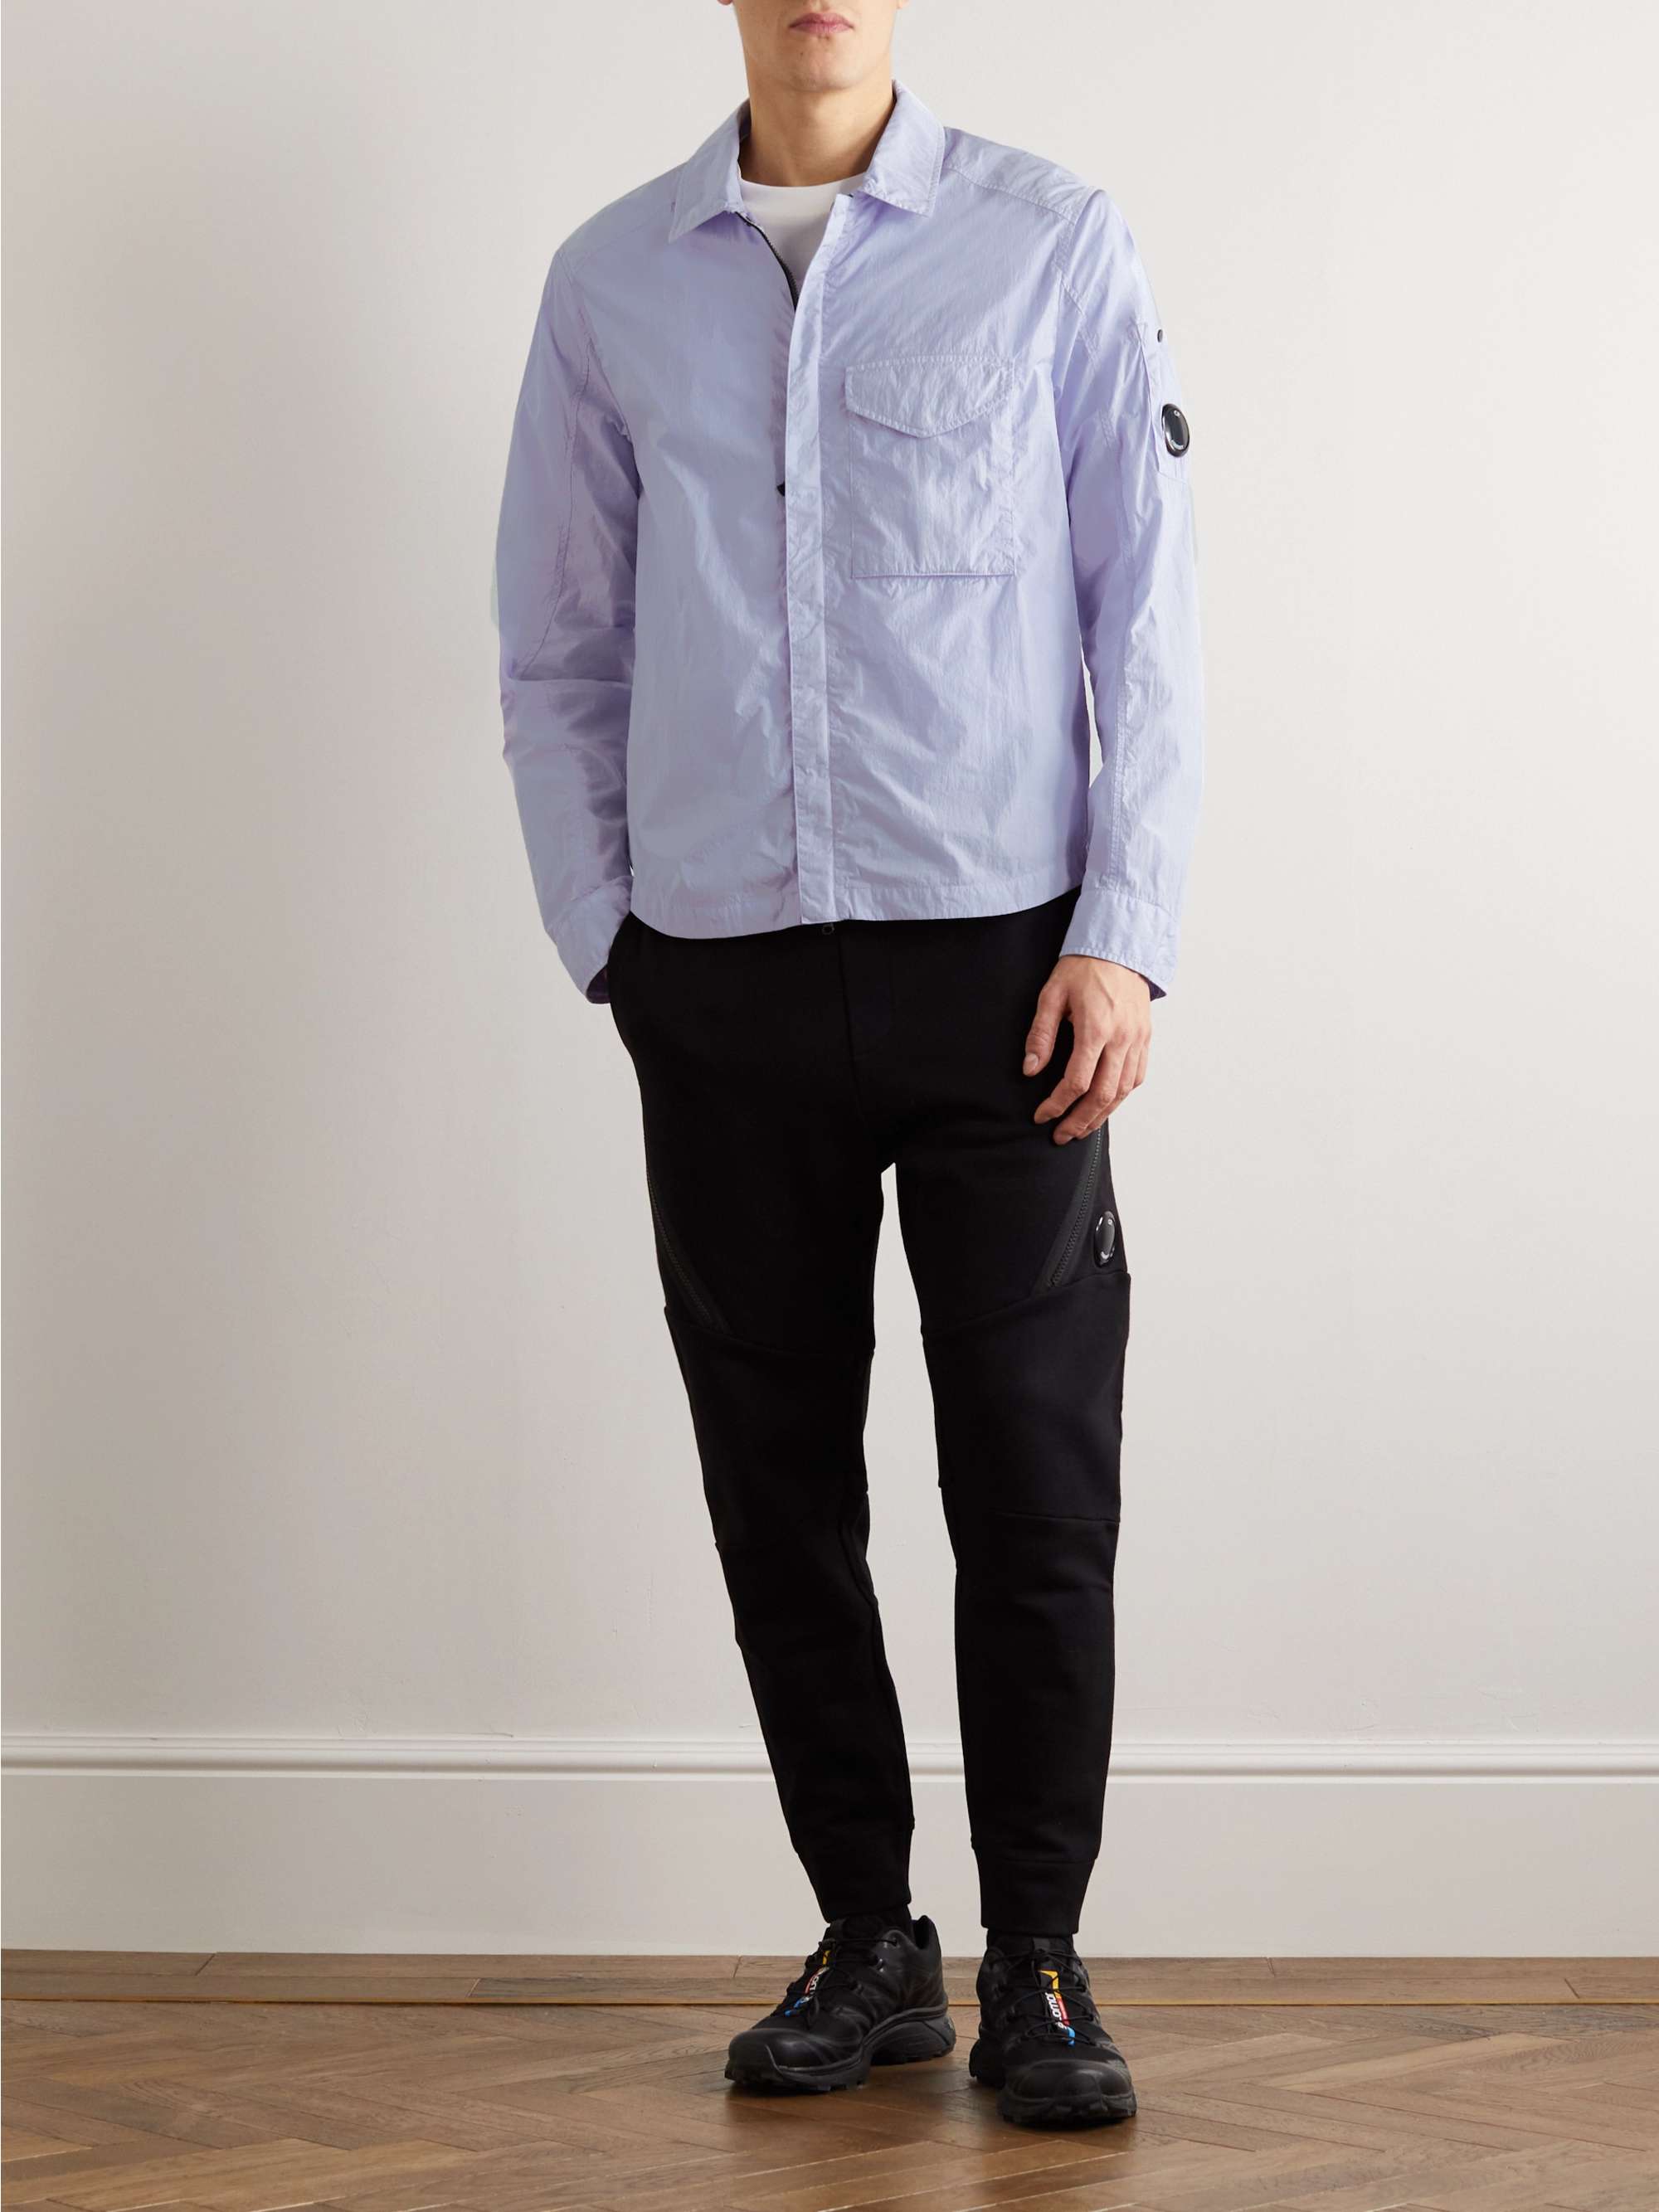 C.P. COMPANY Garment-Dyed Chrome-R Overshirt for Men | MR PORTER